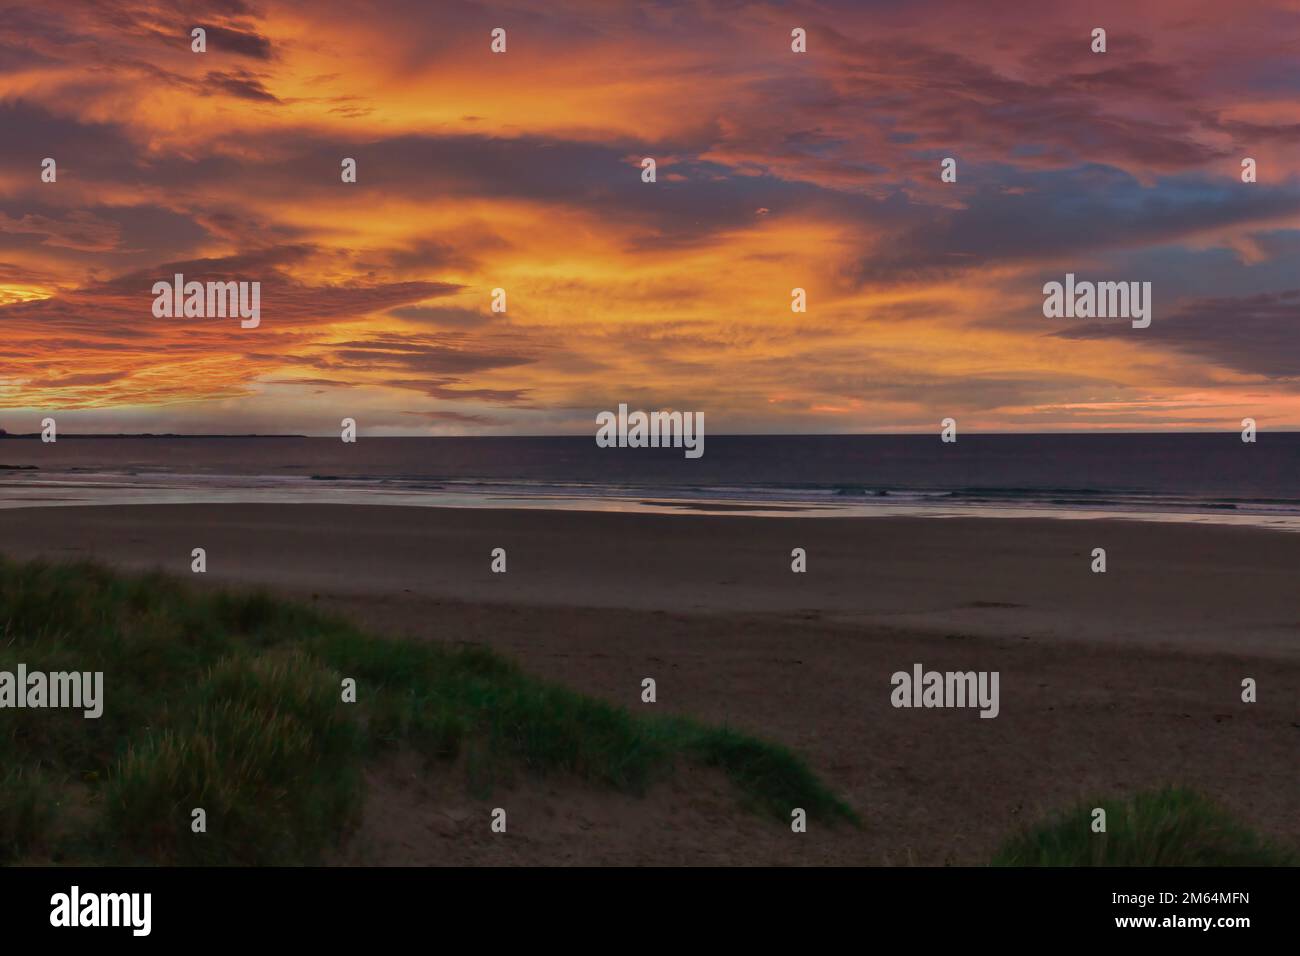 Coucher de soleil sur la plage avec un beau ciel, N E Angleterre Banque D'Images